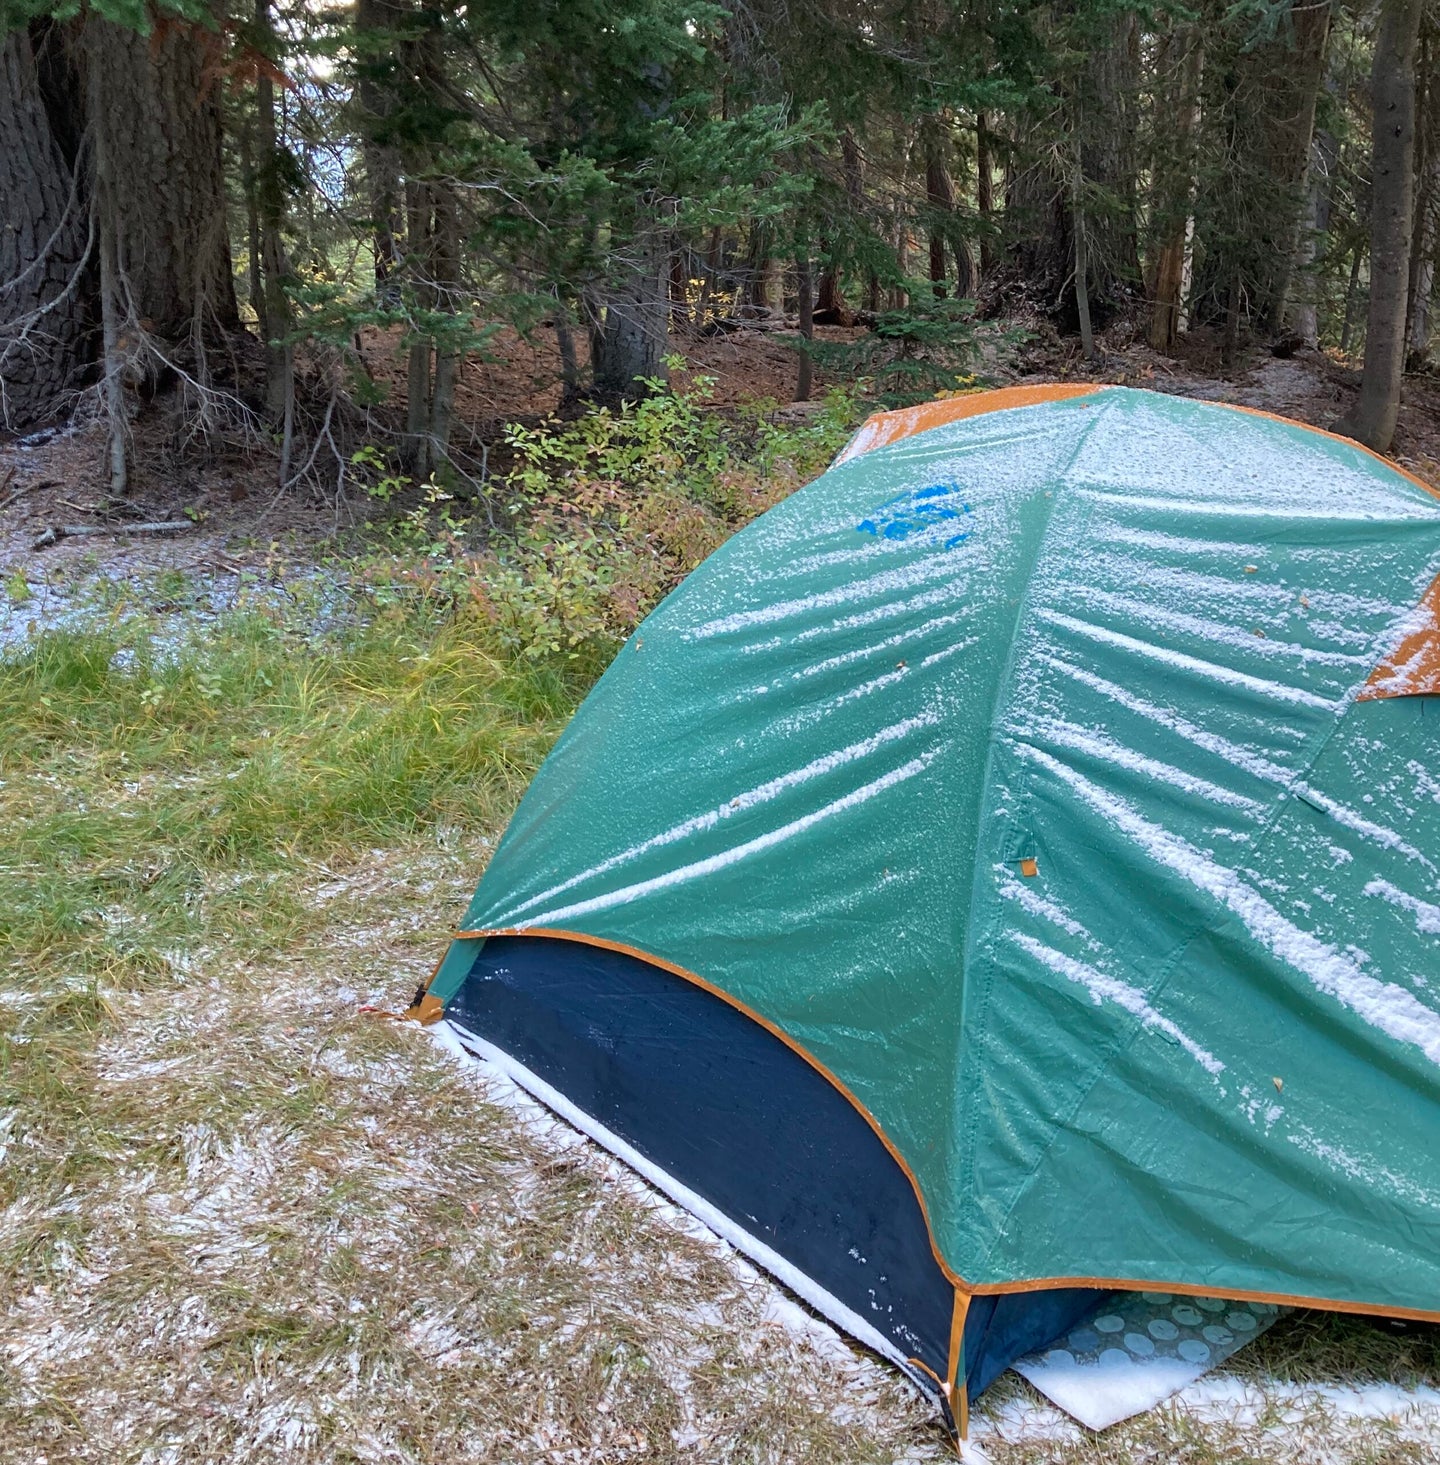 Camping photo